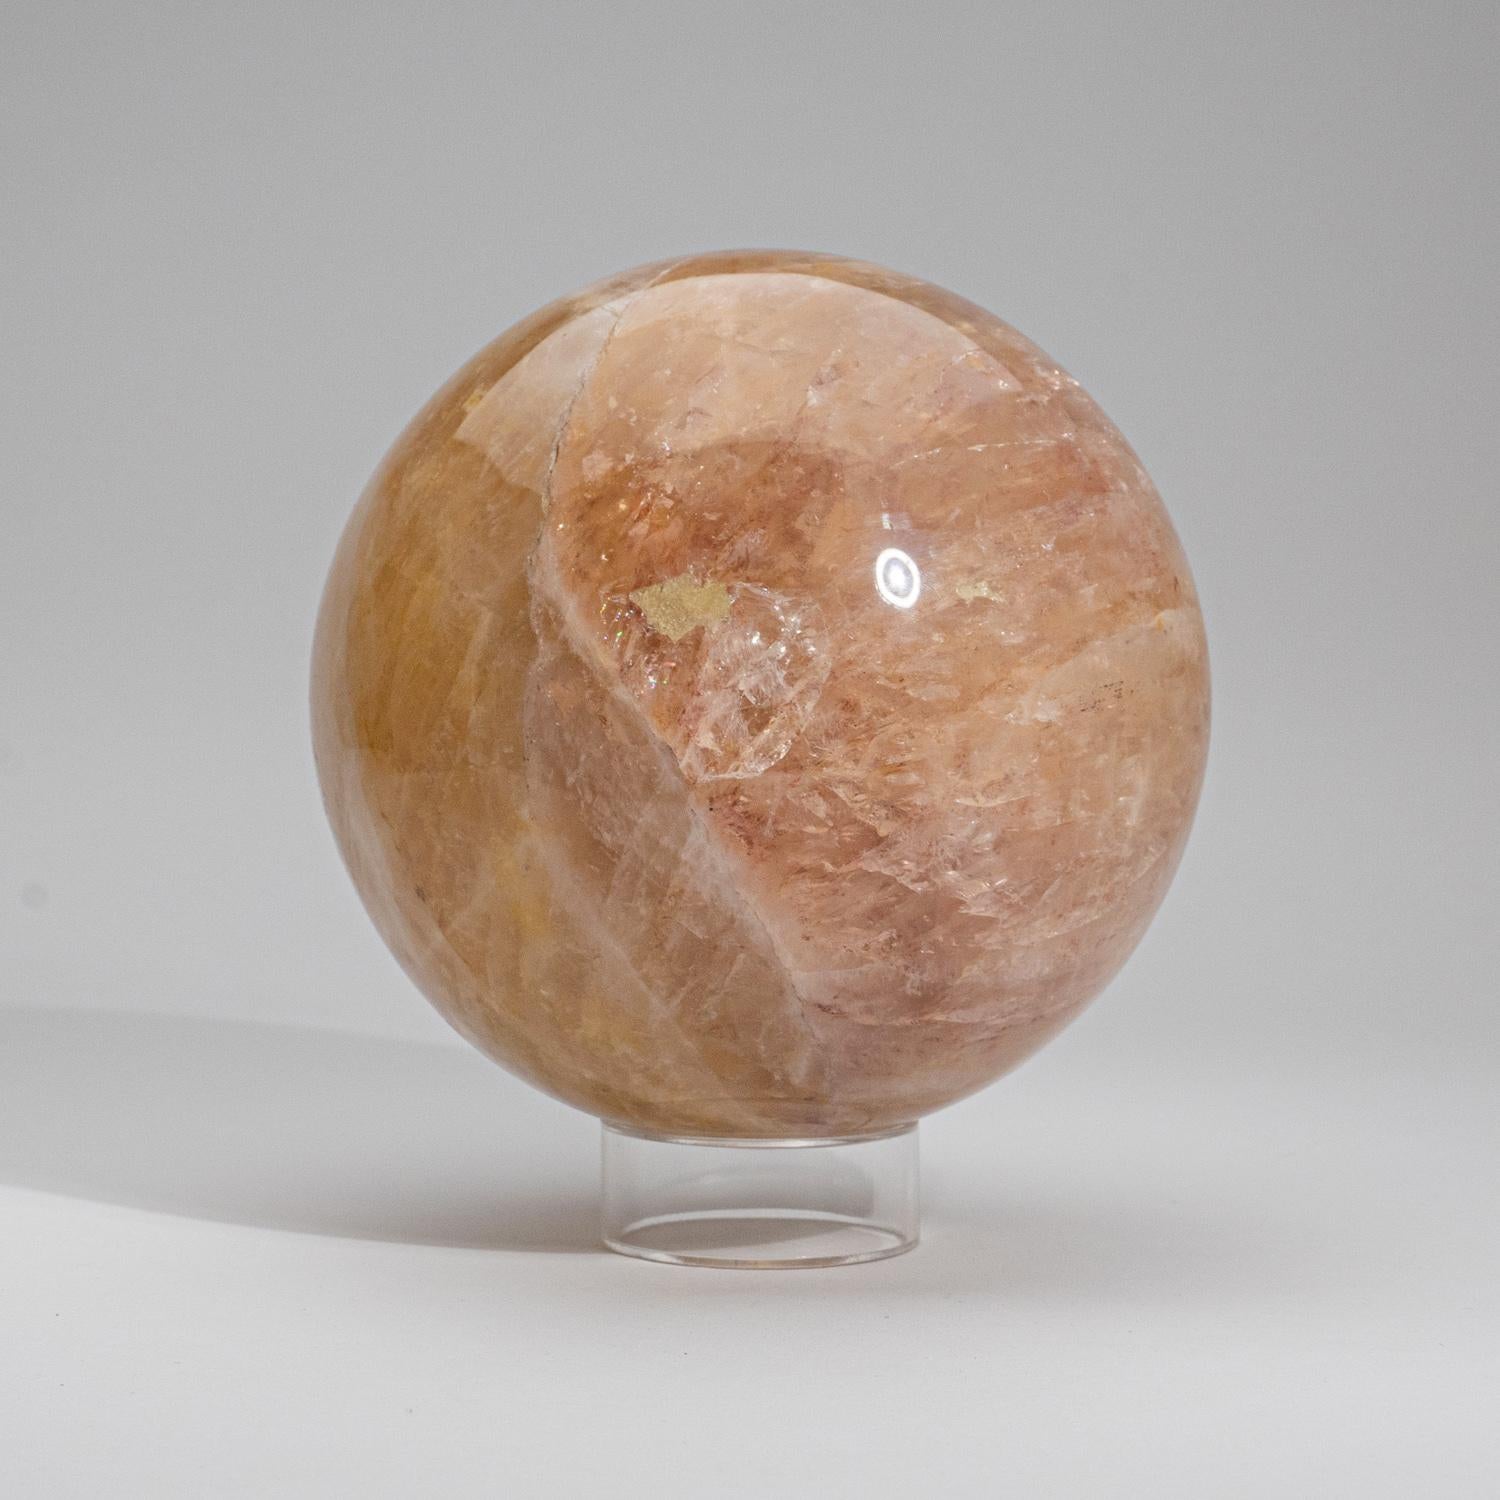 Contemporary Polished Rose Quartz Sphere from Madagascar (6.75